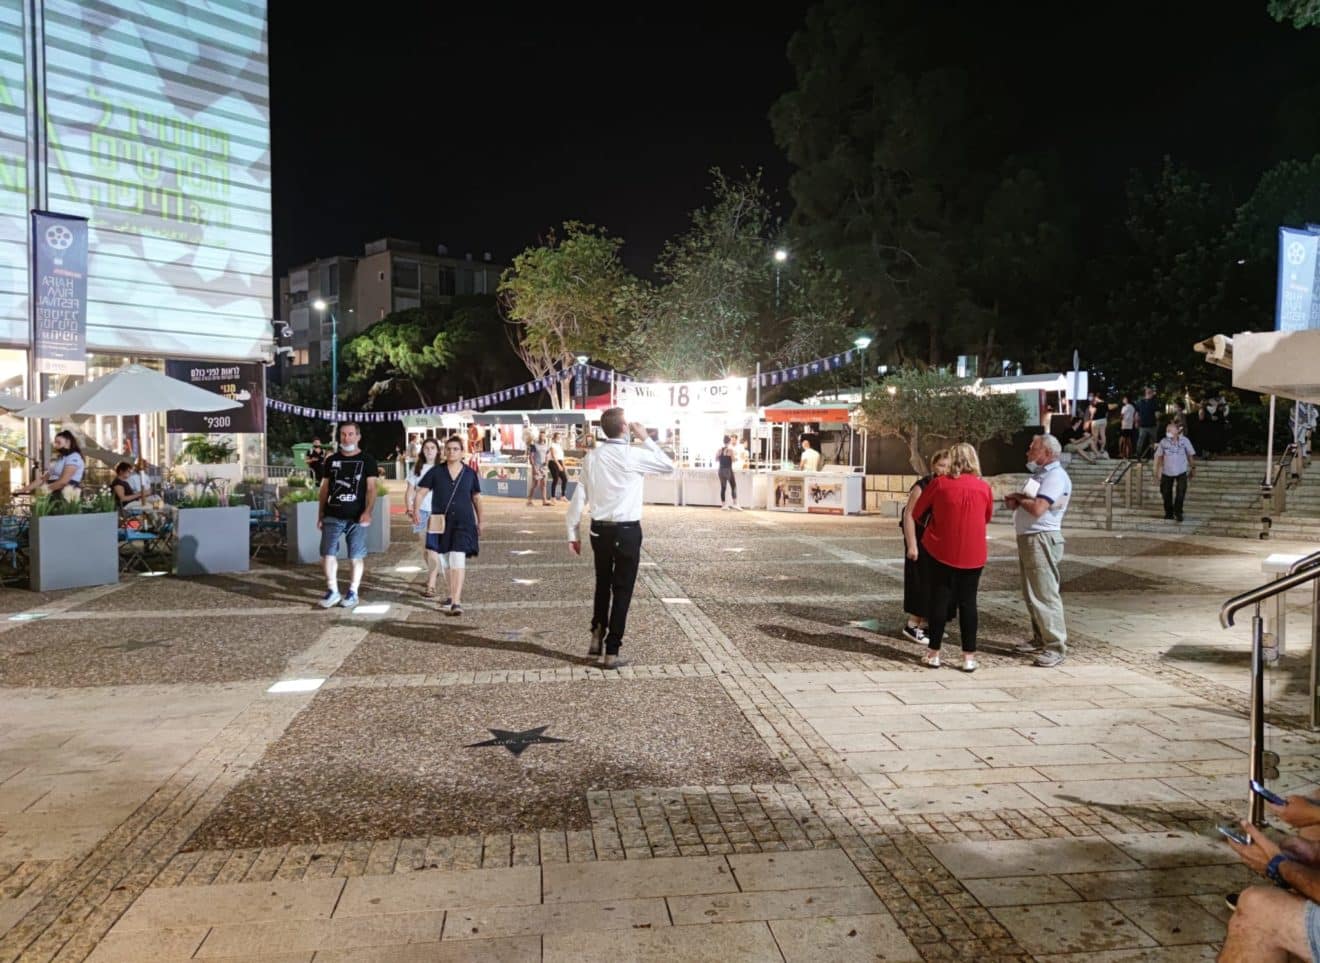 פסטיבל הסרטים ה-37 בחיפה: פחות קהל בערב החג | צפו